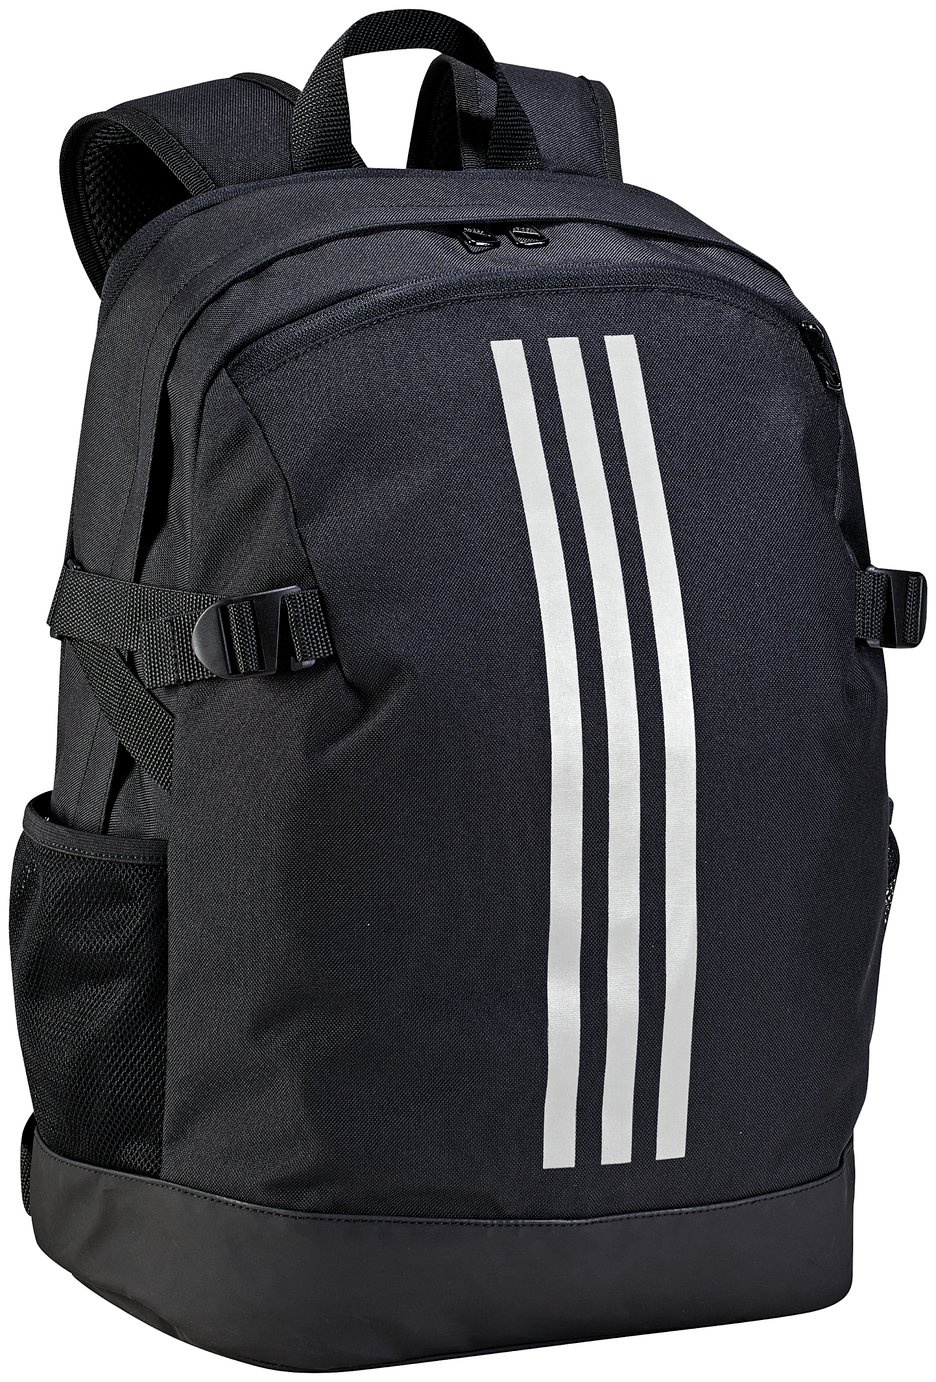 Adidas Powerplus Backpack - Black 